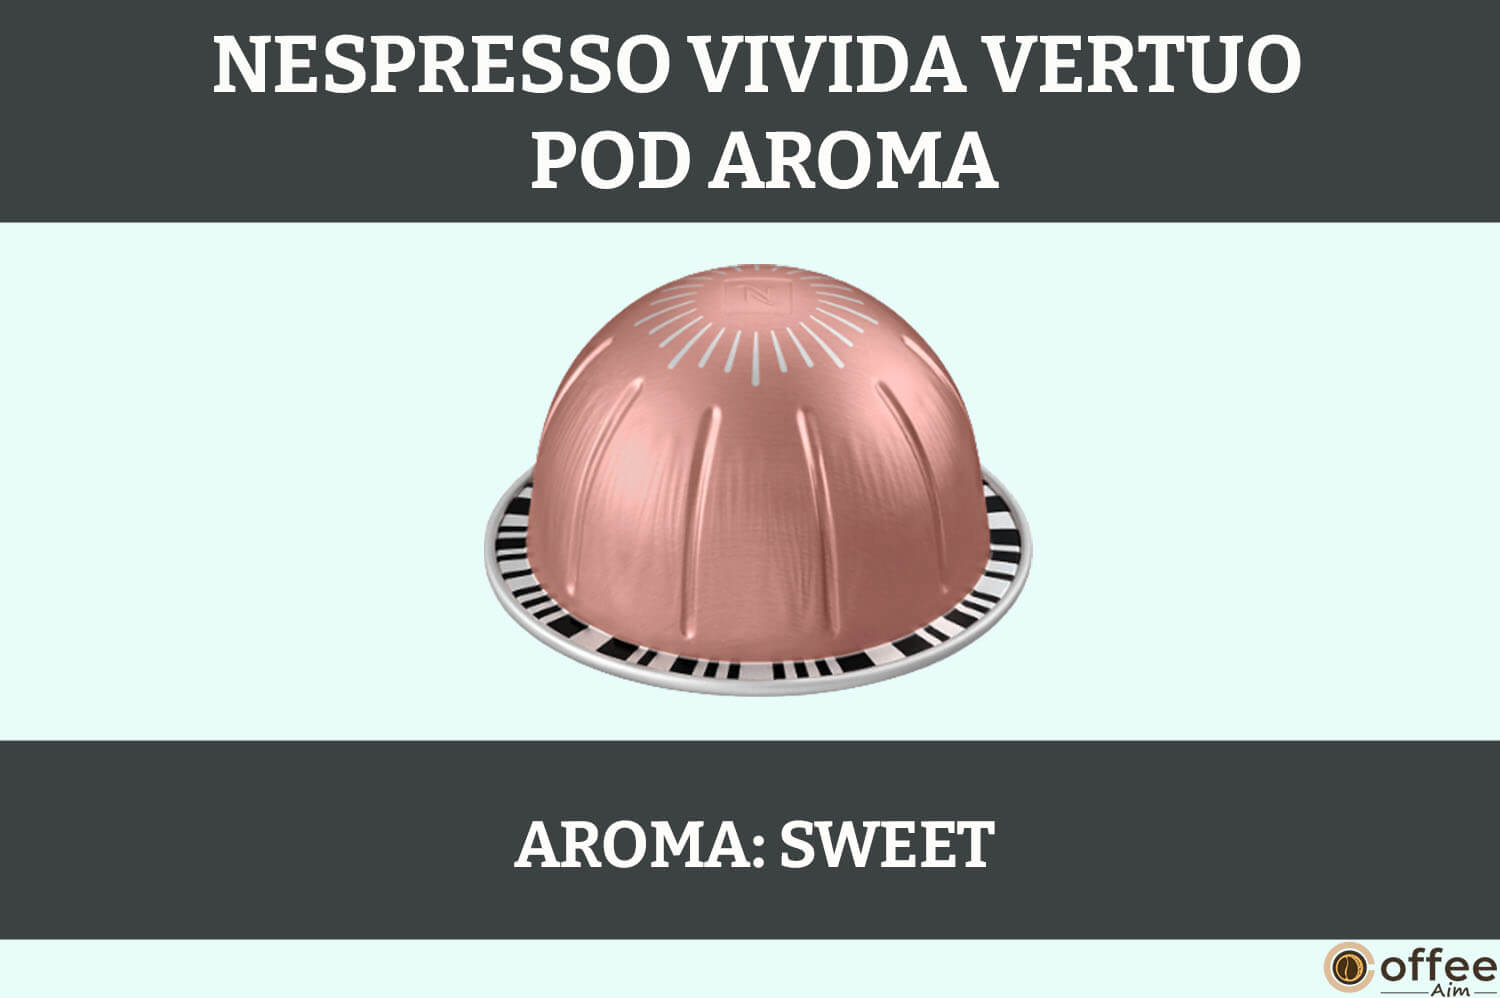 This image represents the aroma of Nespresso Vivida vertuo pod for the article "Nespresso Vivida vertuo pod review"